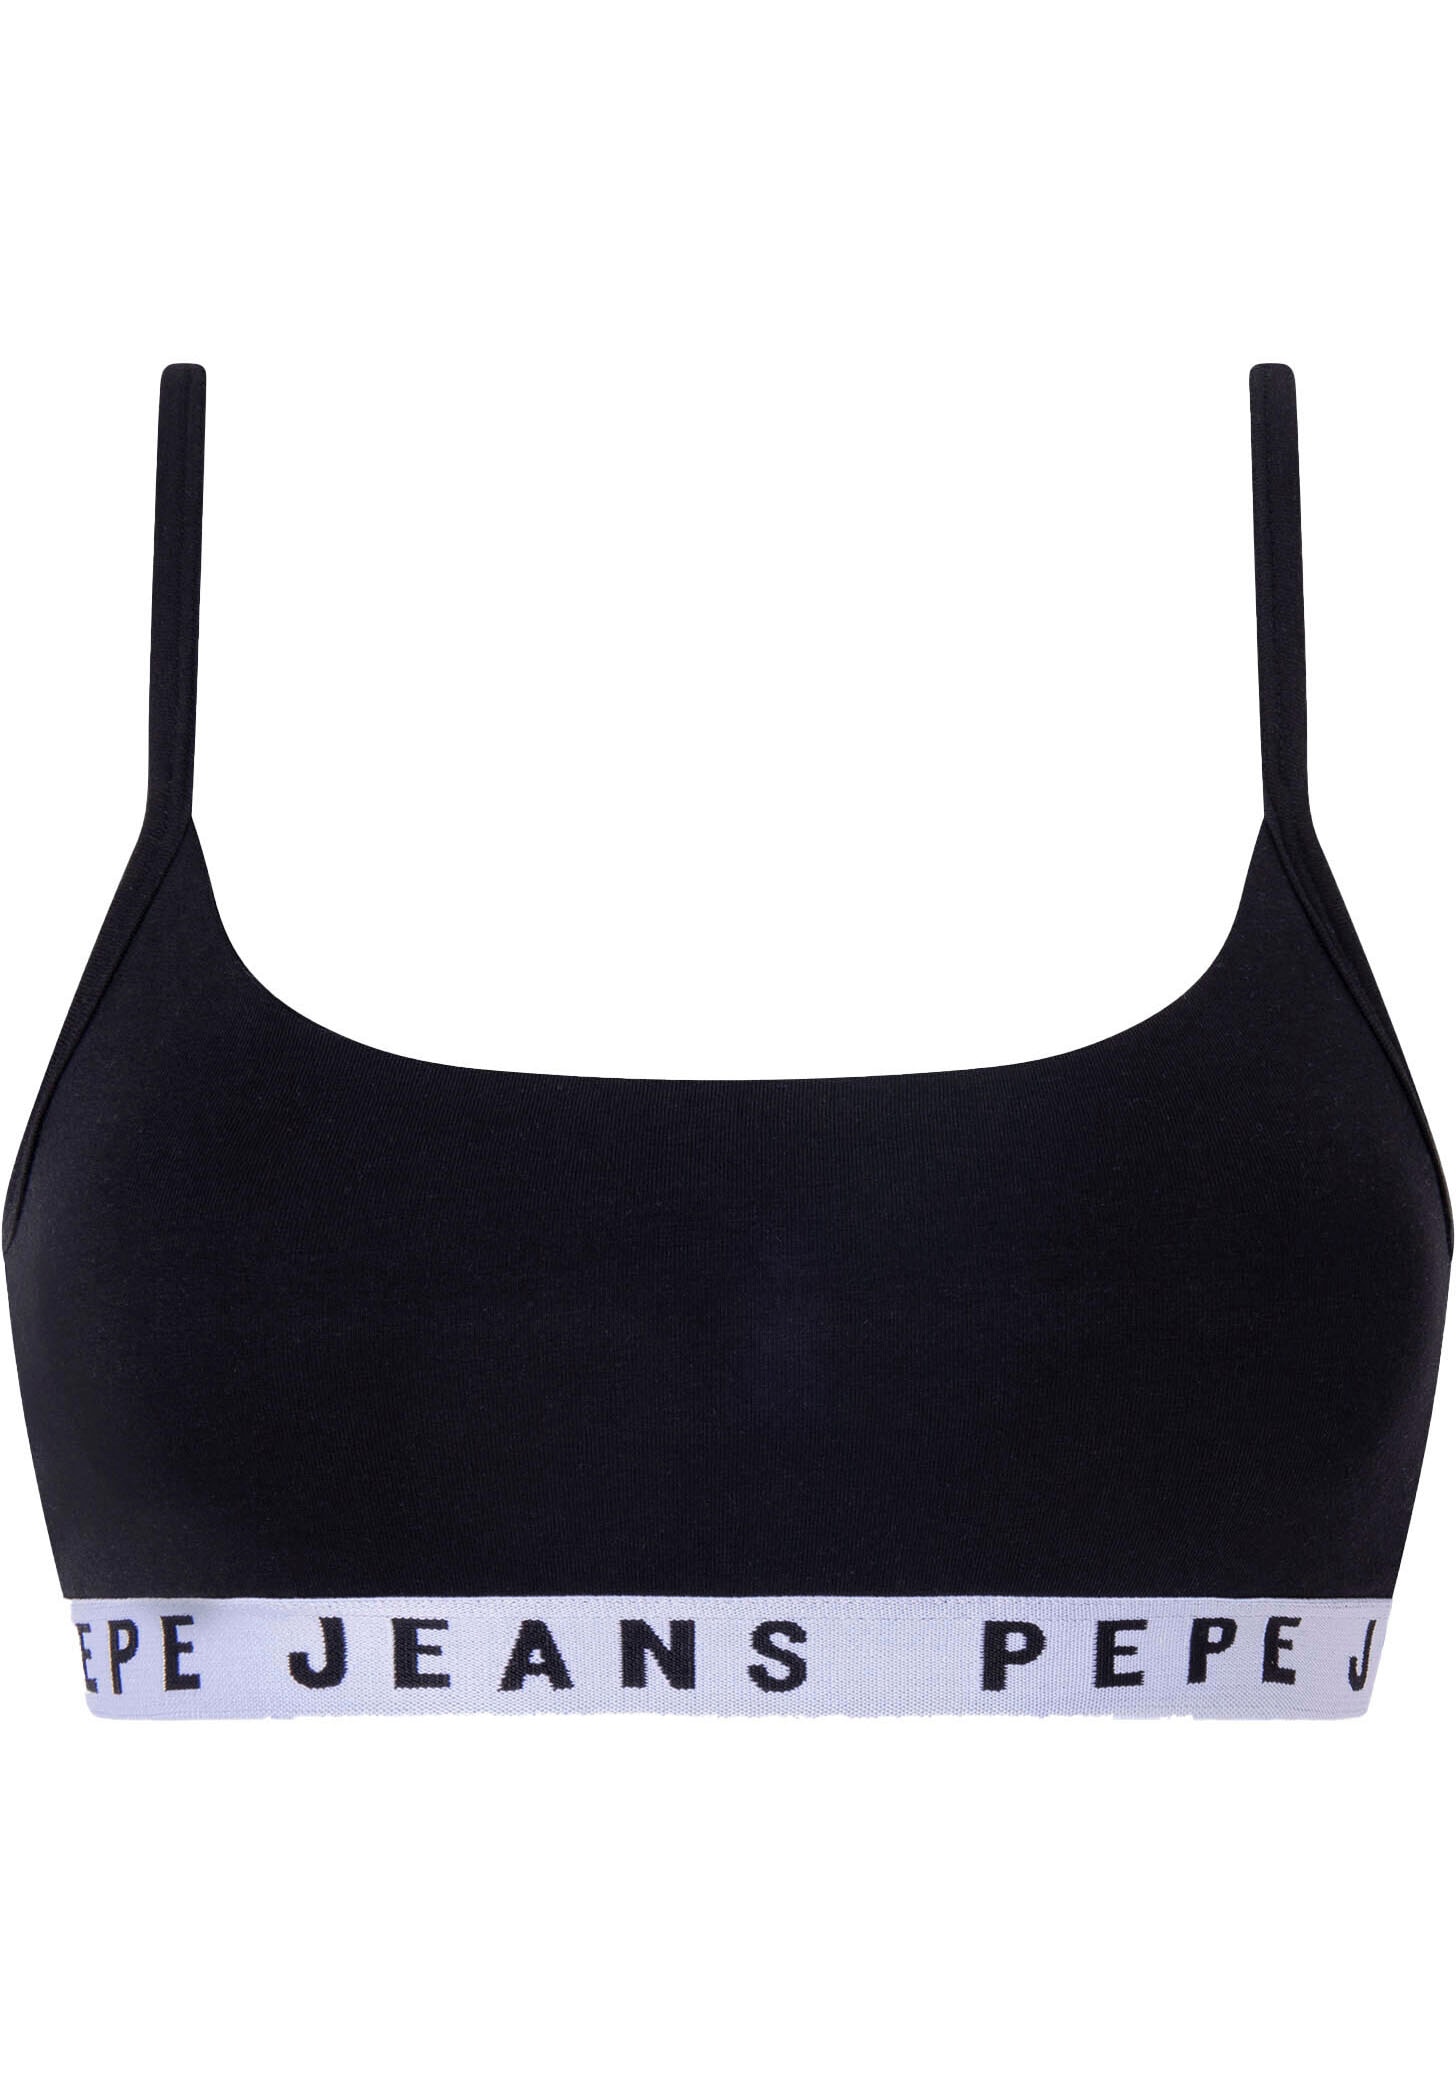 Pepe Jeans Pepe Džinsai Liemenėlė »Logo«